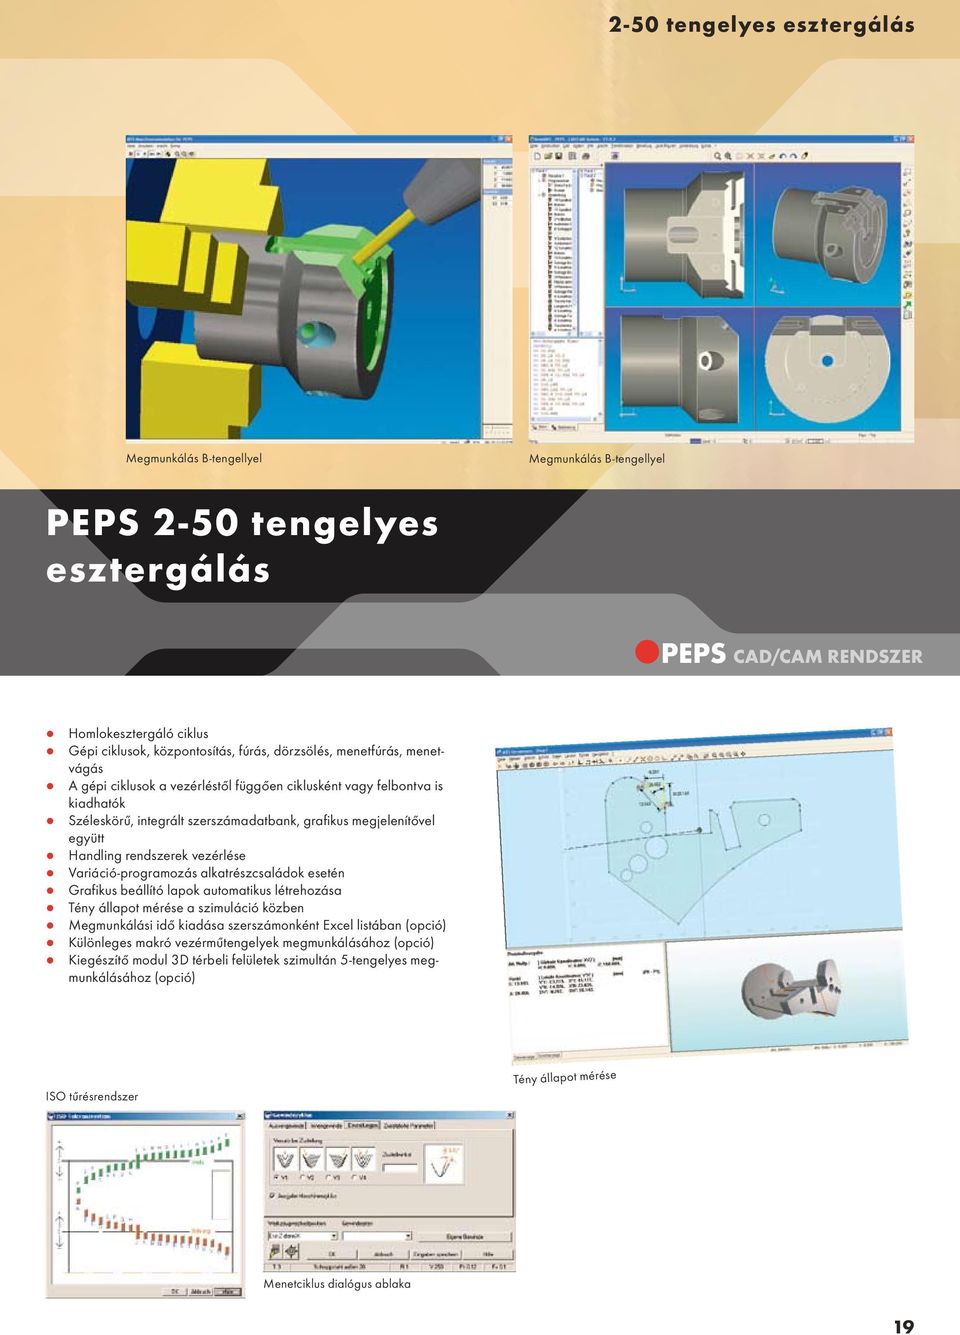 PEPS CAD/CAM RENDSZER. magyar - PDF Ingyenes letöltés